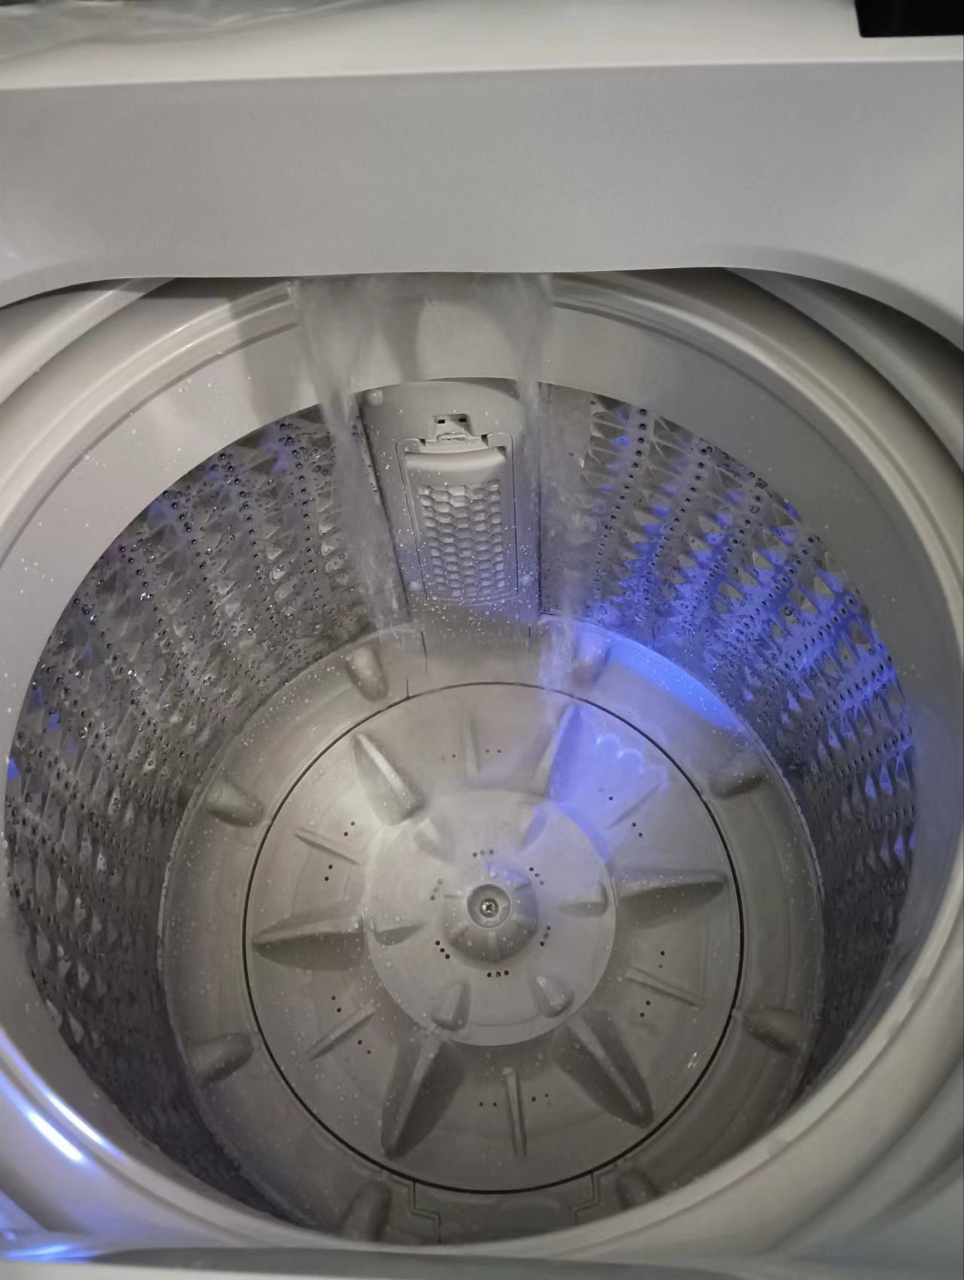 荣事达(Royalstar)洗衣机12公斤全自动波轮大容量家用宿舍租房可预约洗衣机ERVP193024T晒单图